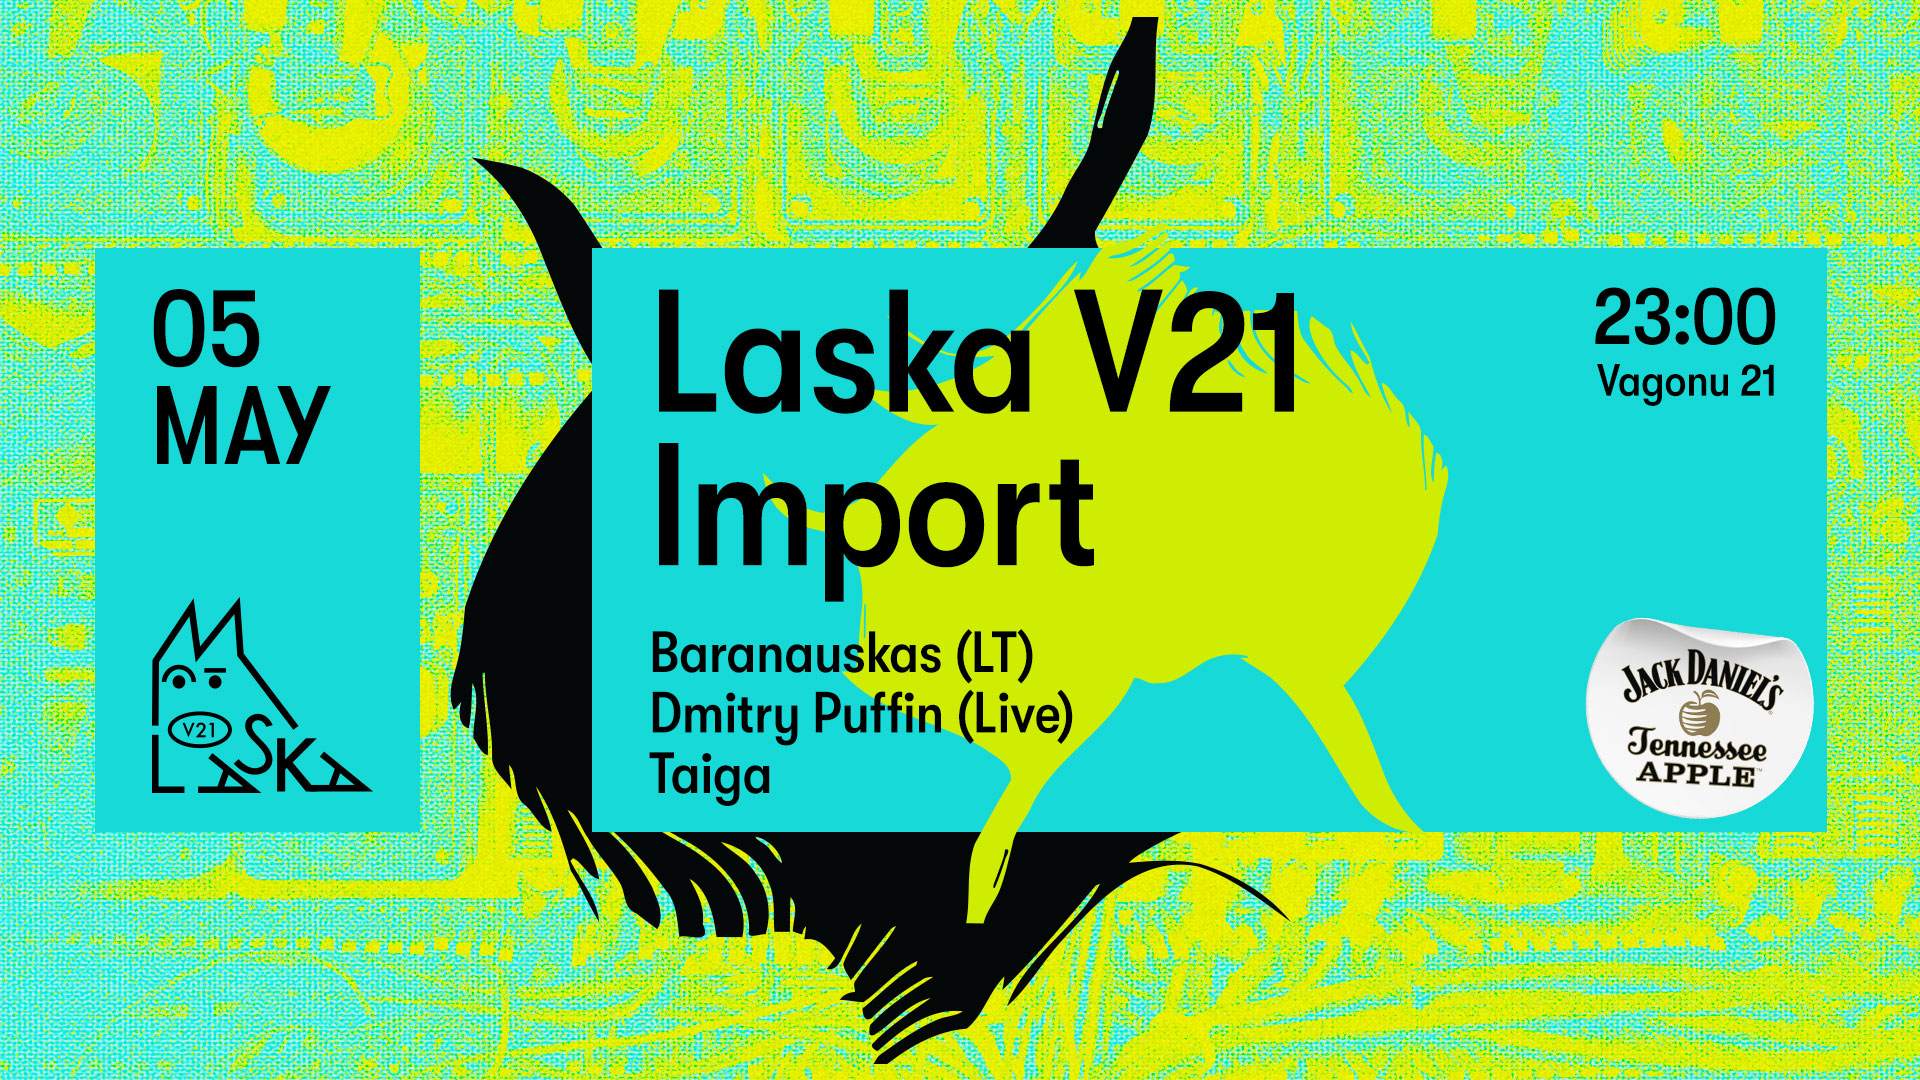 Laska V21 Import - Baranauskas (LT) - Dmitry Puffin (Live) - Taiga - フライヤー表